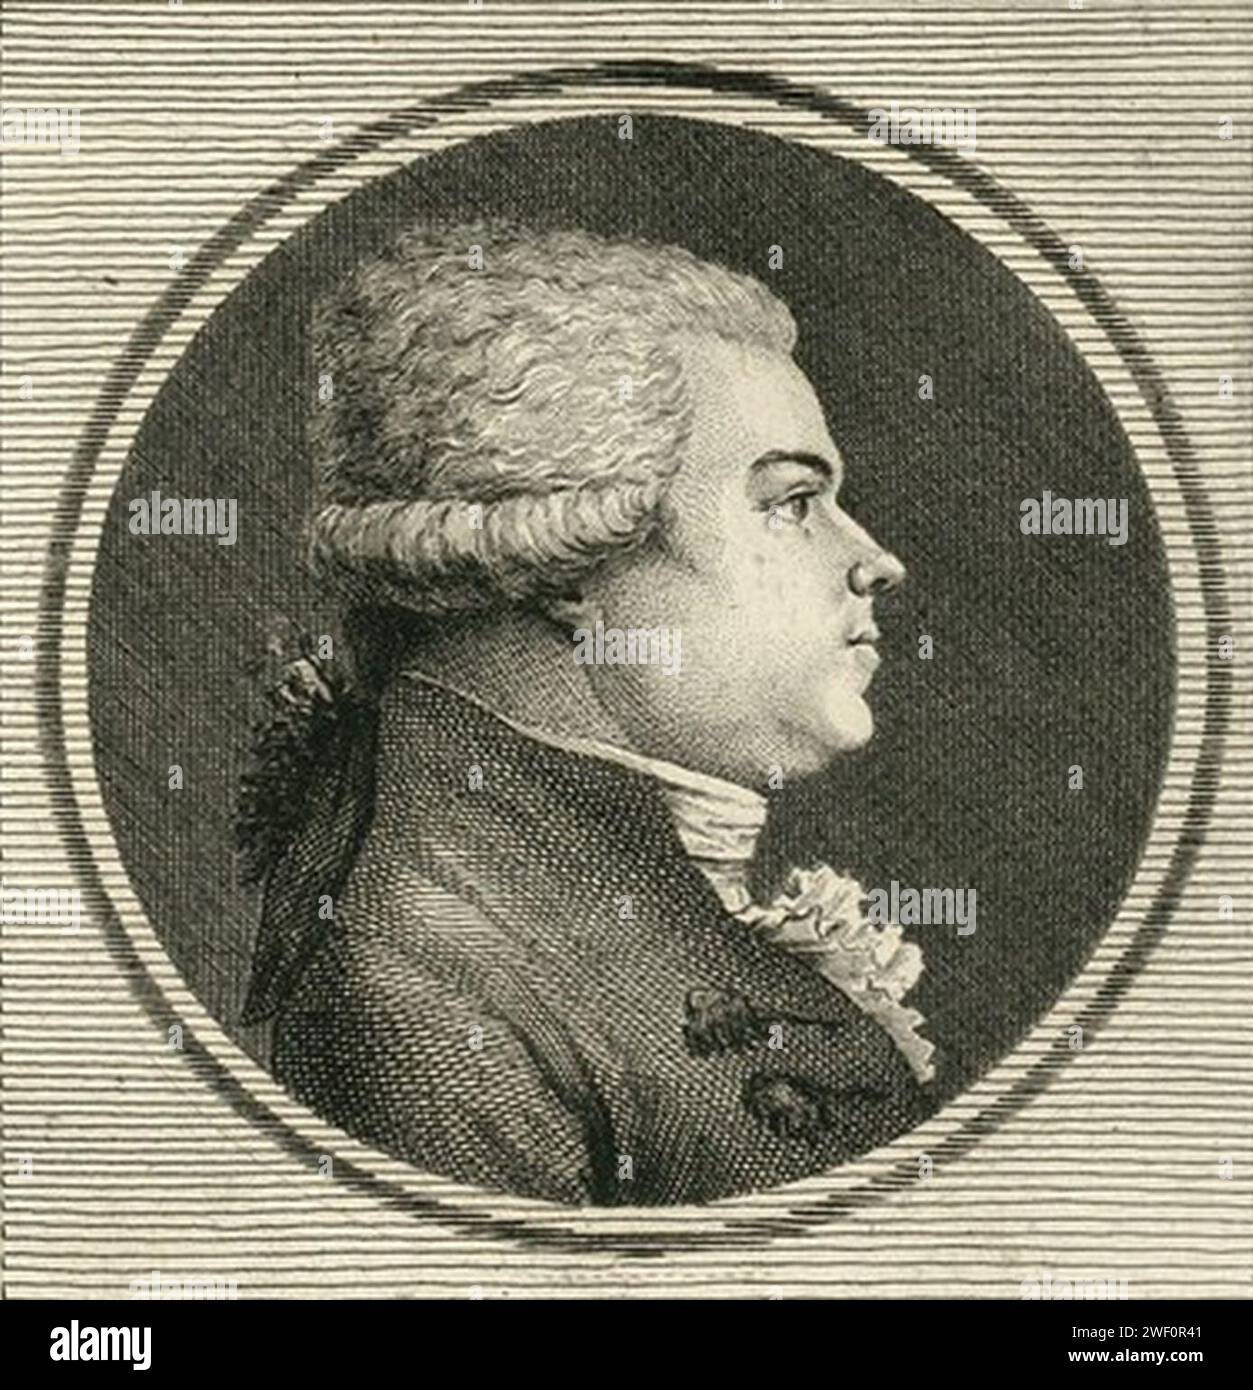 ANT. J. P. ois Mesnager - né à Germigni-l'Evêque le 17 j.er 1756 depute de Meaux à l'Assemblée nationale de 1789 - (estampe) - Labadye del. ; Texier sc. Foto Stock